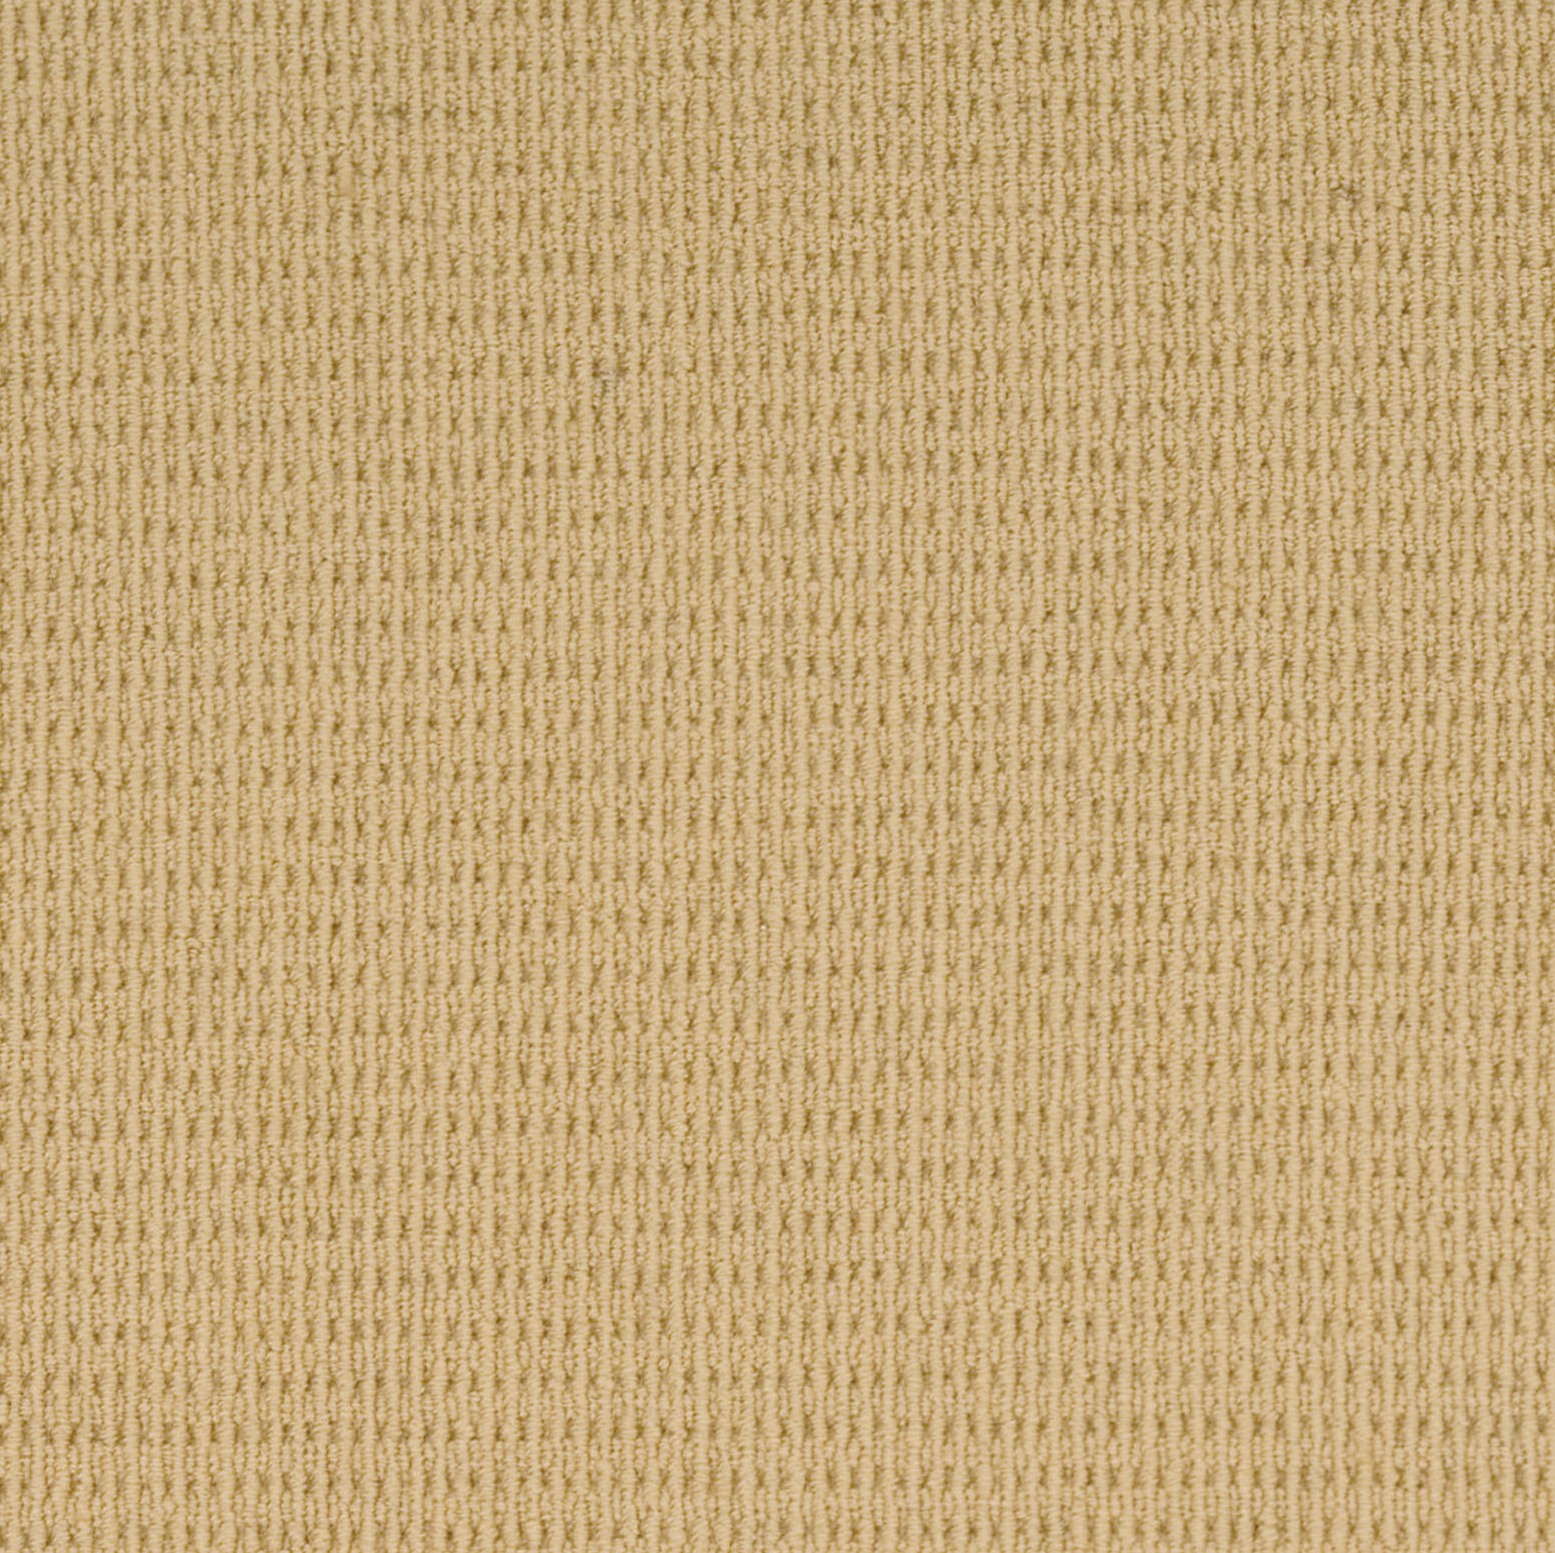 Carpet - Carpeting - Loop - Berber - Pattern - Texture - Rite Rug